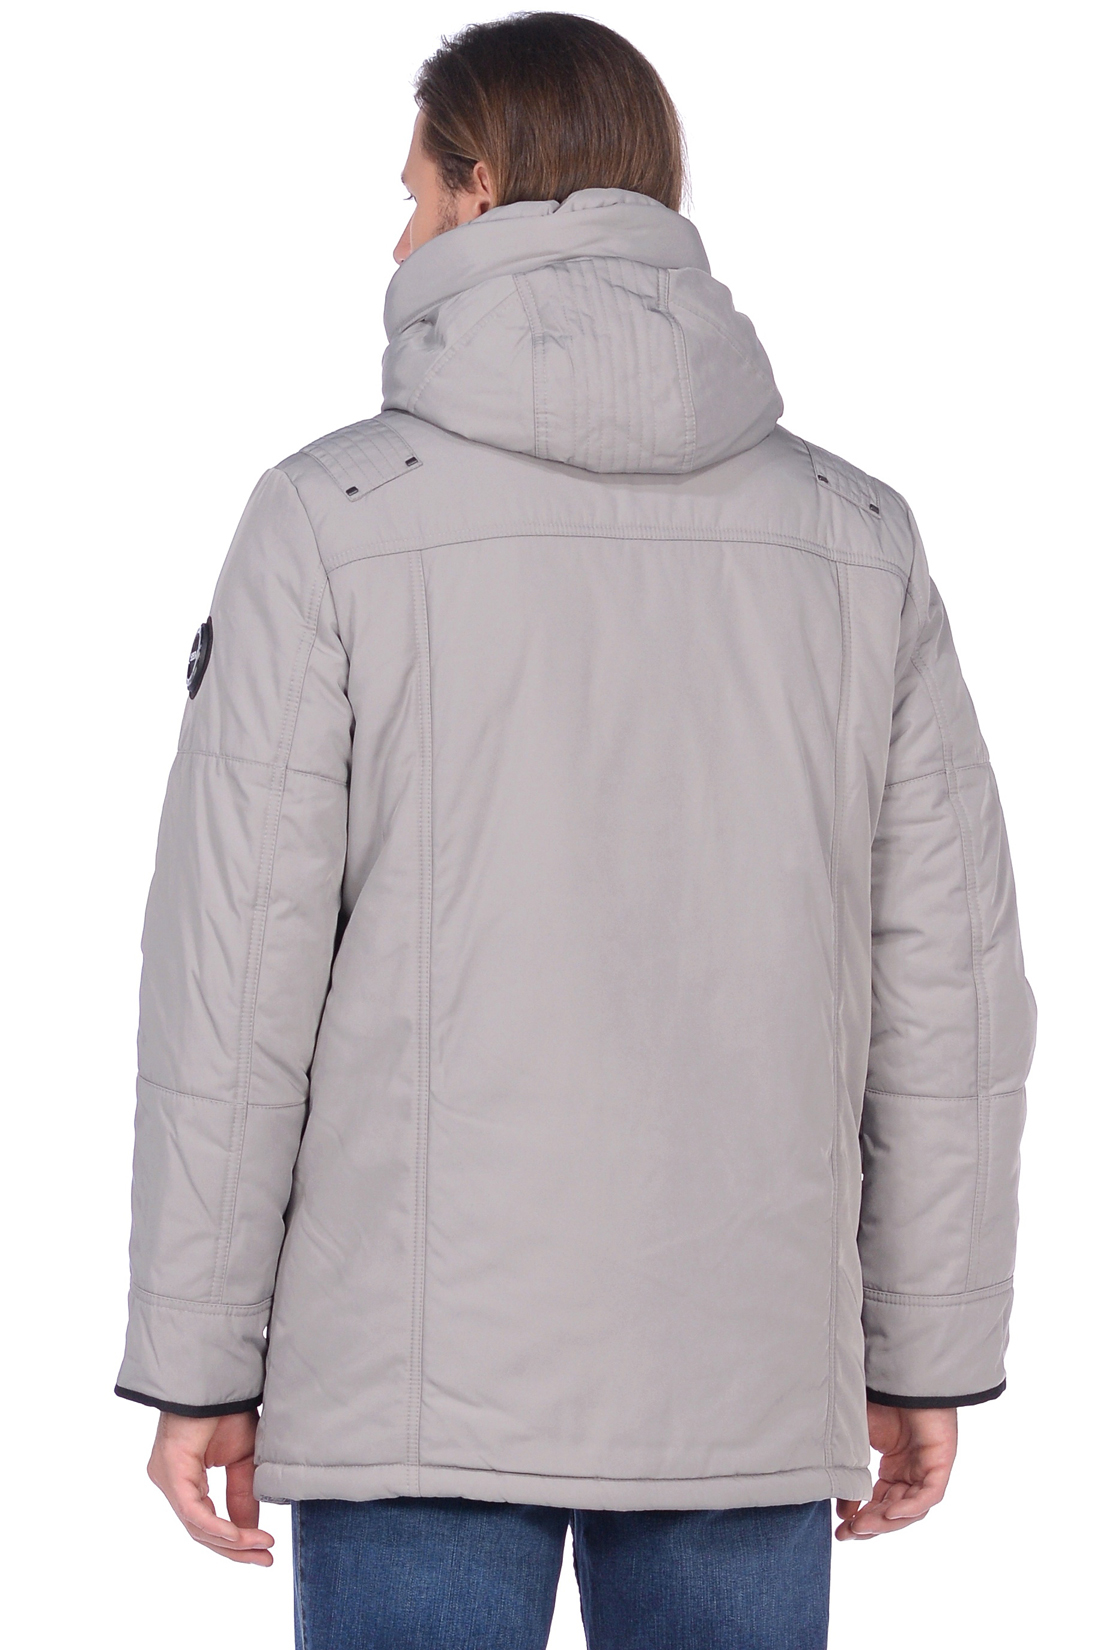 Куртка с закрытым капюшоном (арт. baon B538531), размер S, цвет серый Куртка с закрытым капюшоном (арт. baon B538531) - фото 5